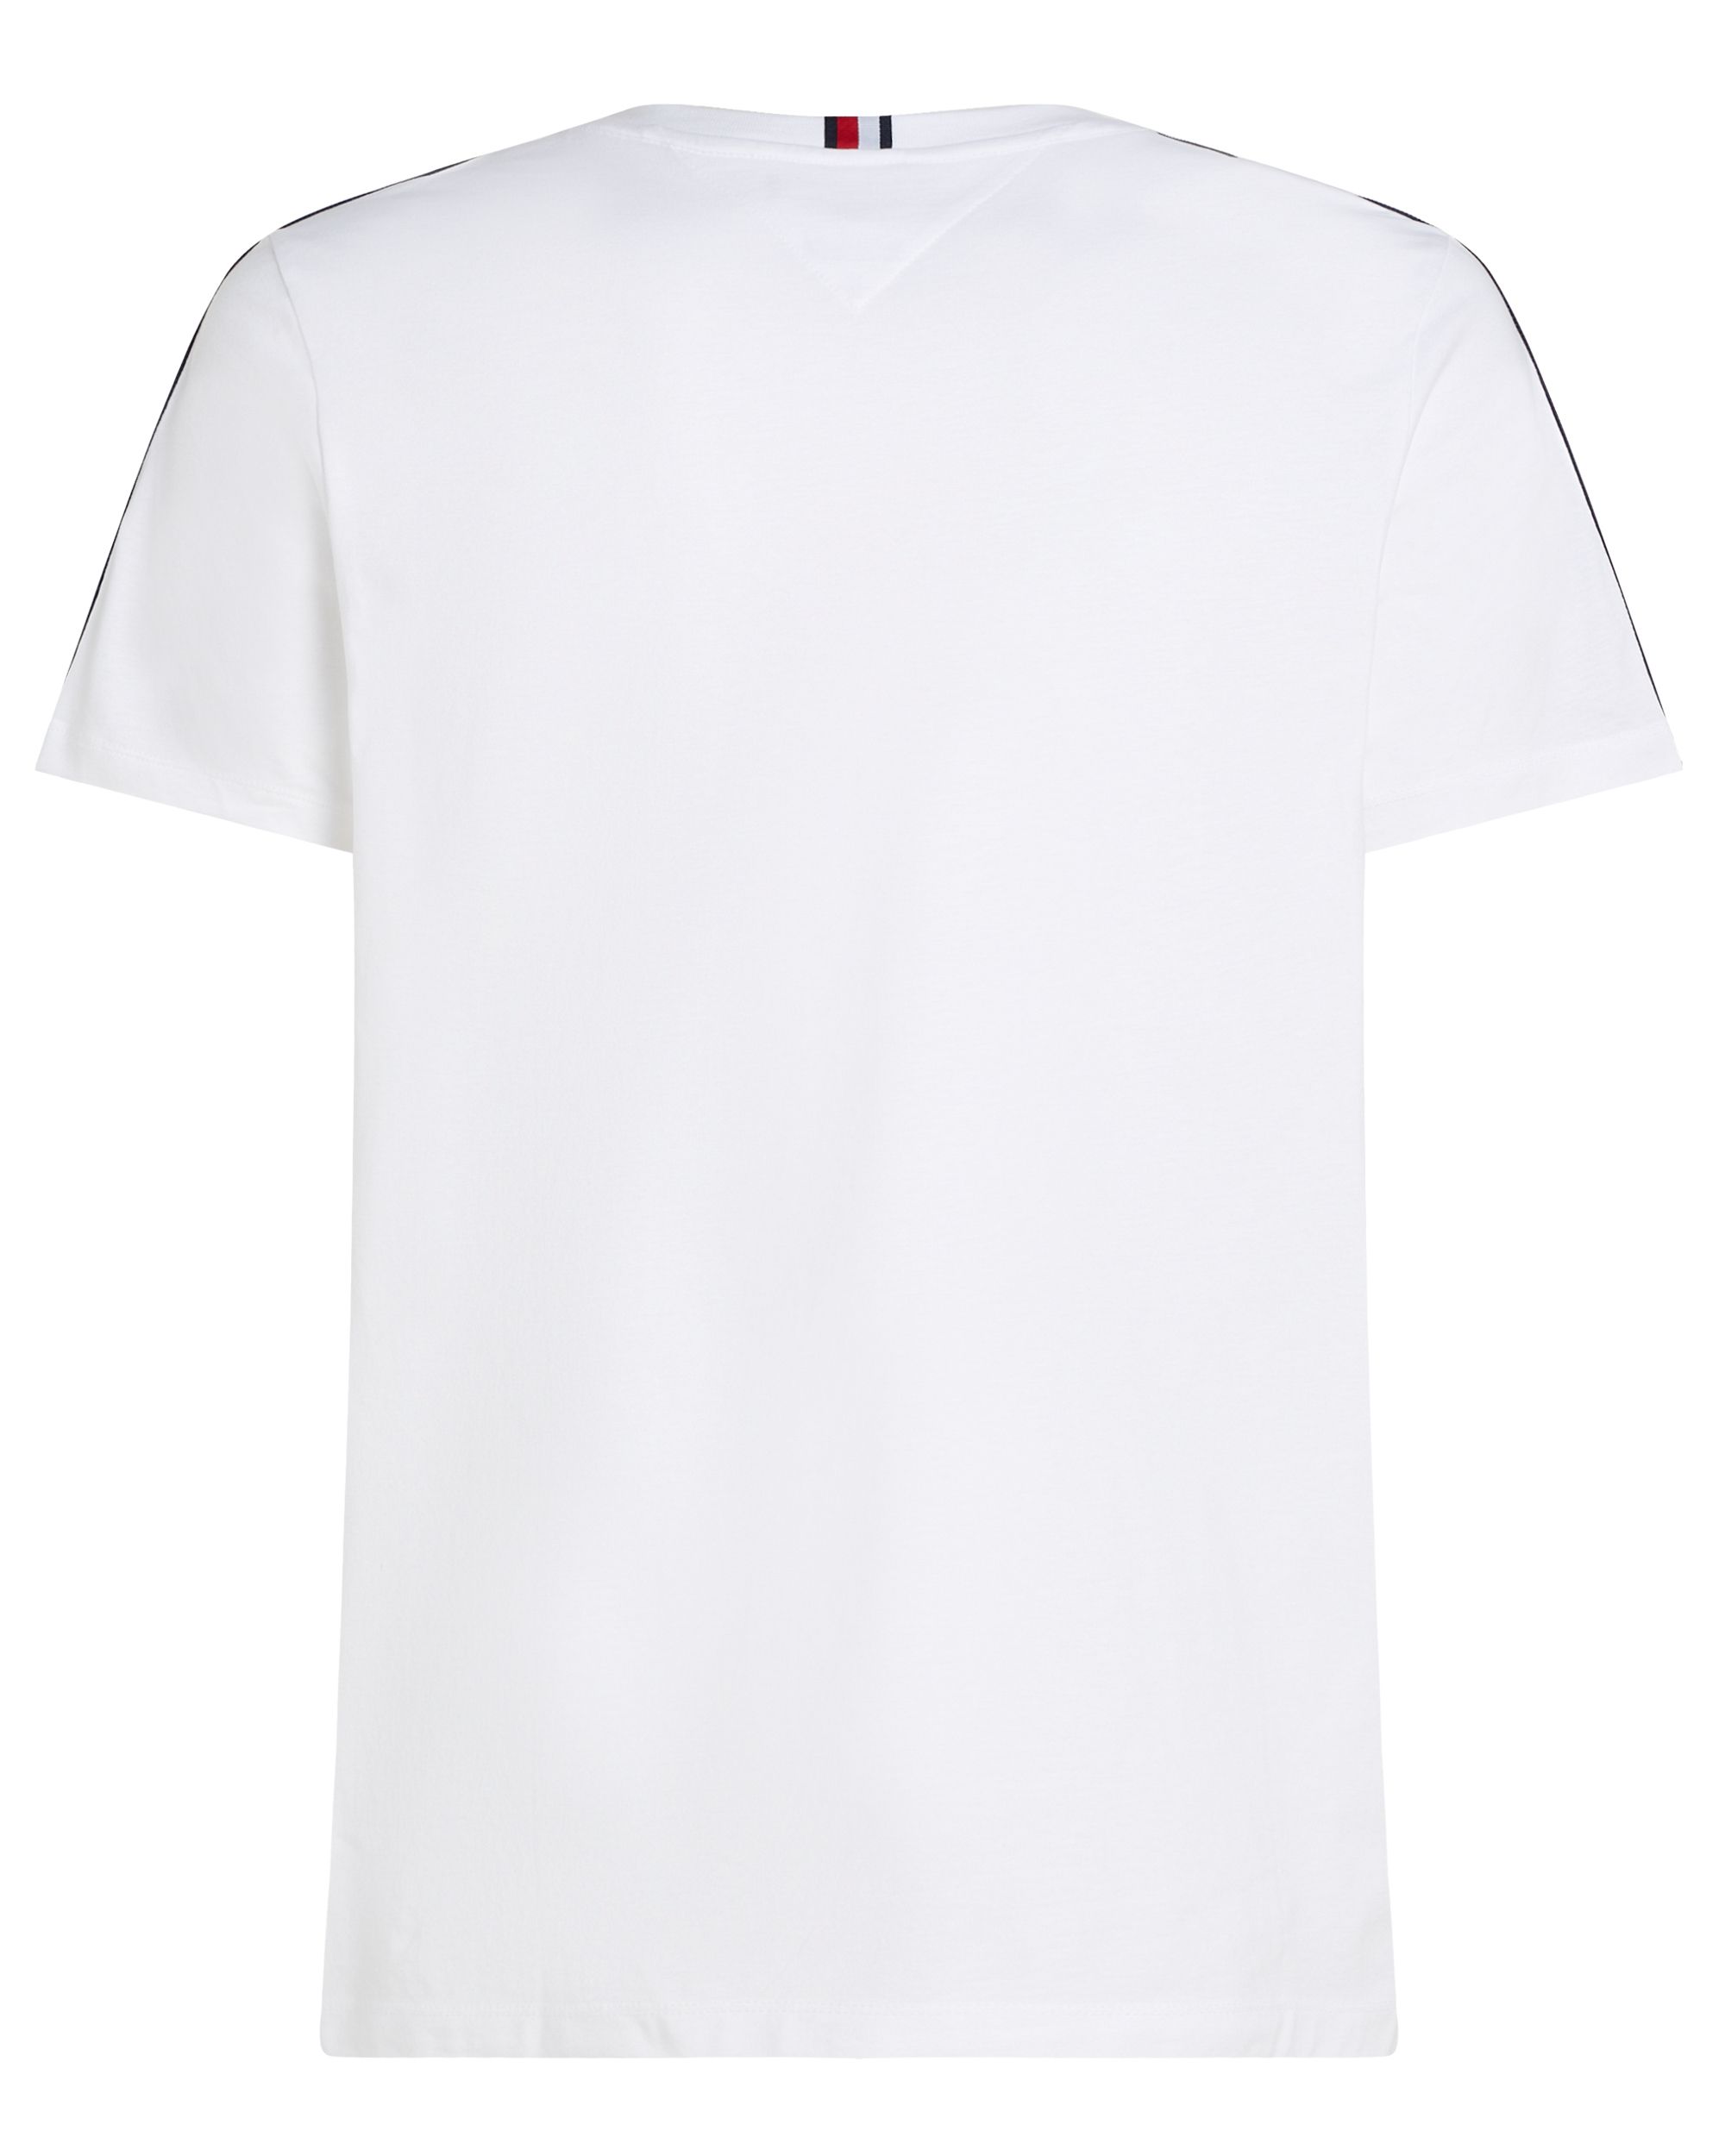 Tommy Hilfiger Menswear T-shirt KM Grijs 095365-001-M